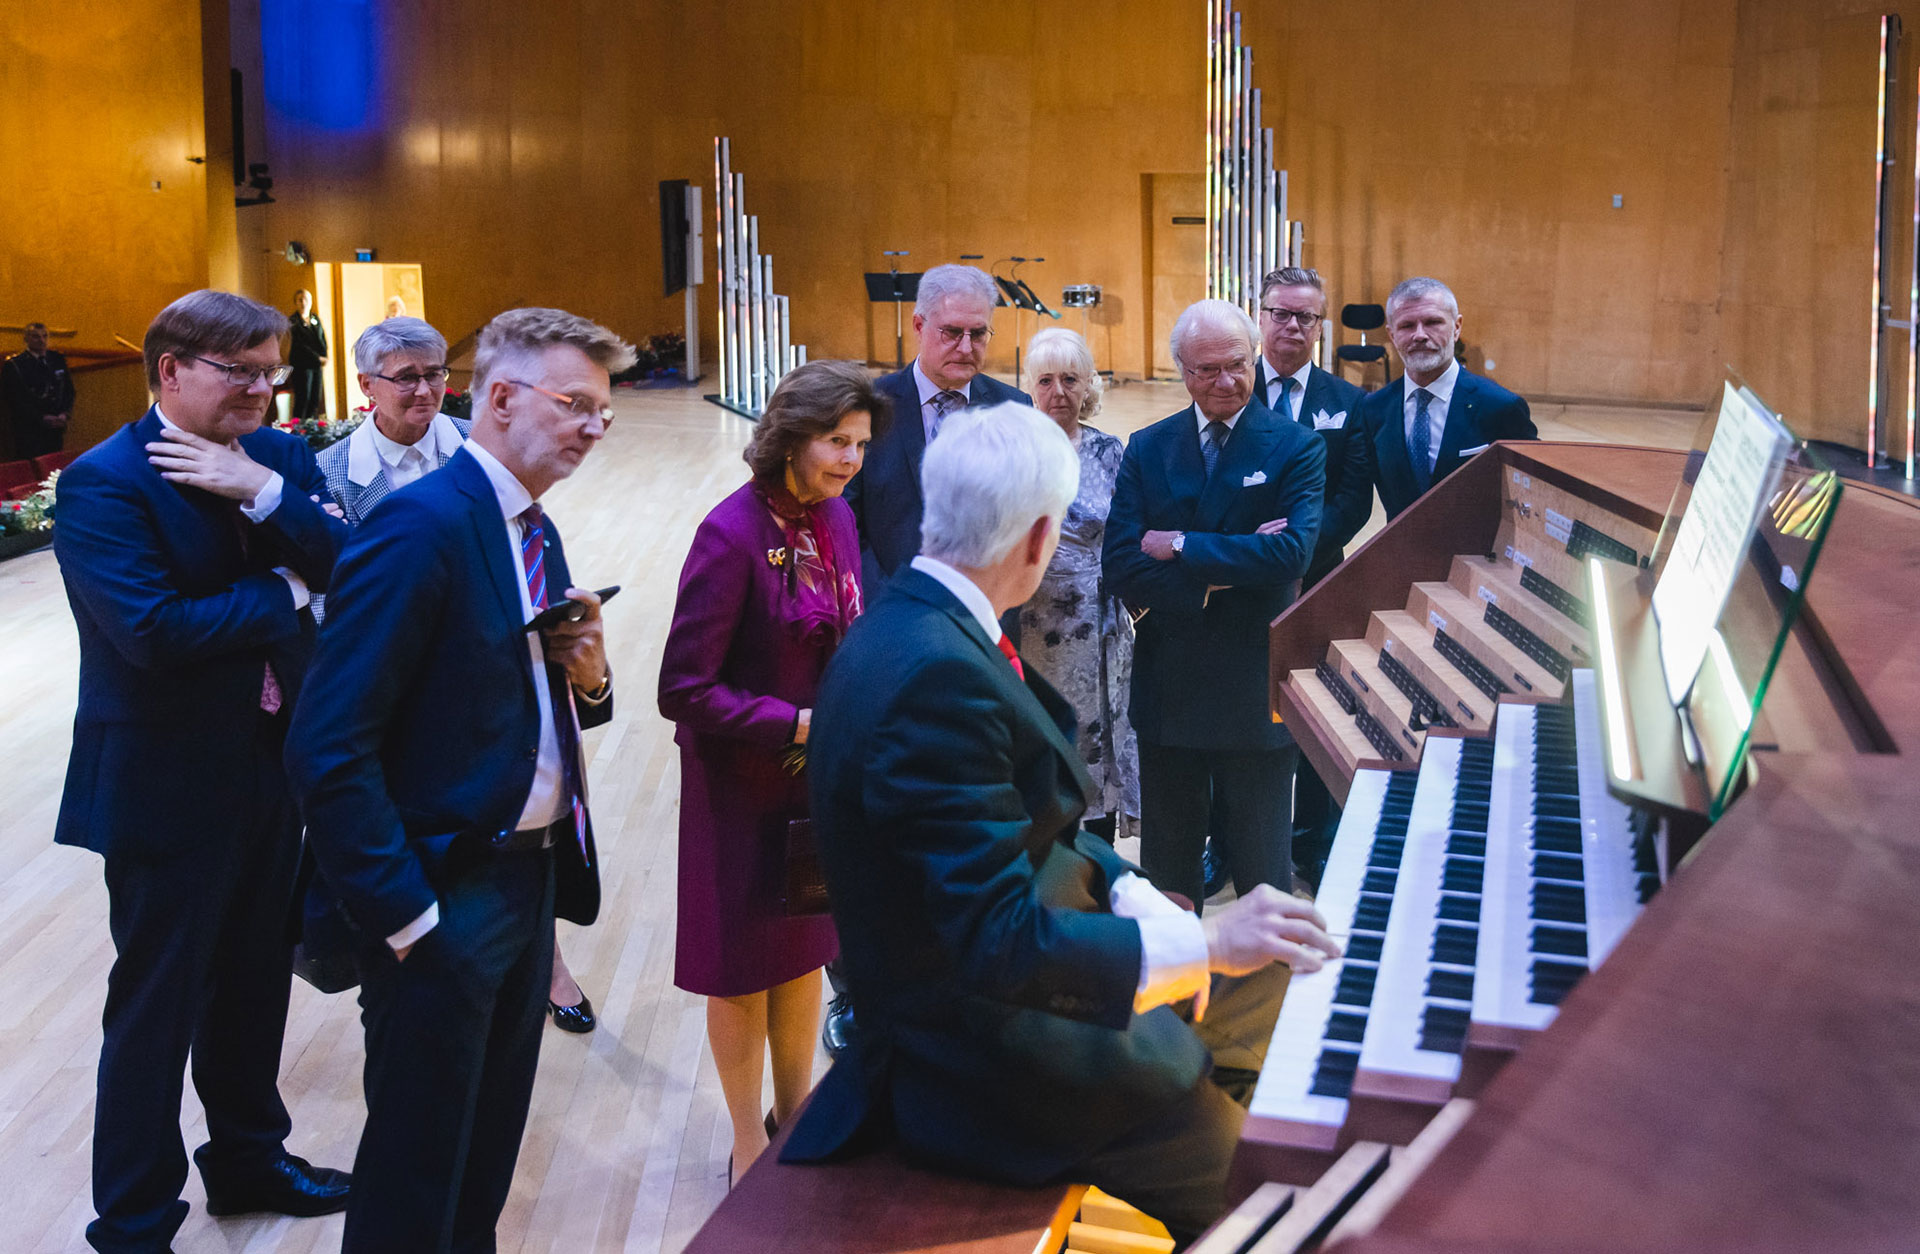 Kungaparet på scenen tillsammans med grupp nyfikna som tittar närmare på orgeln.